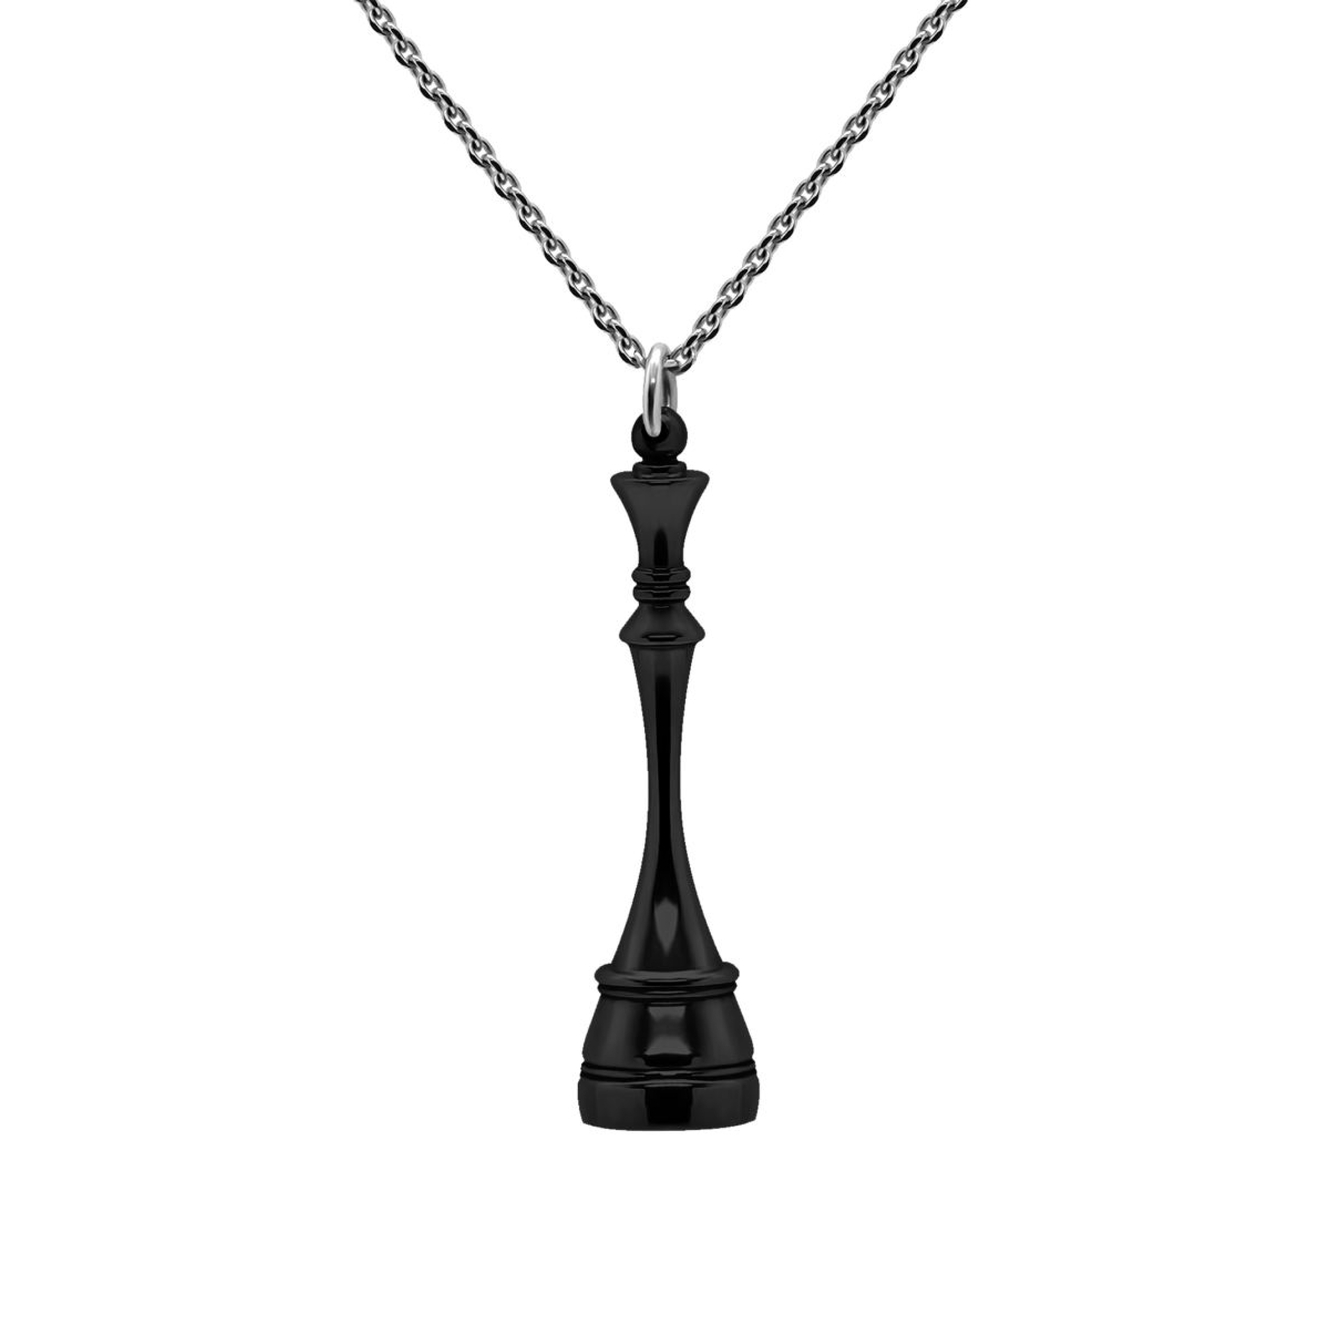 Prosto Jewelry Подвеска Королева Black из серебра prosto jewlry браслет слон black из серебра